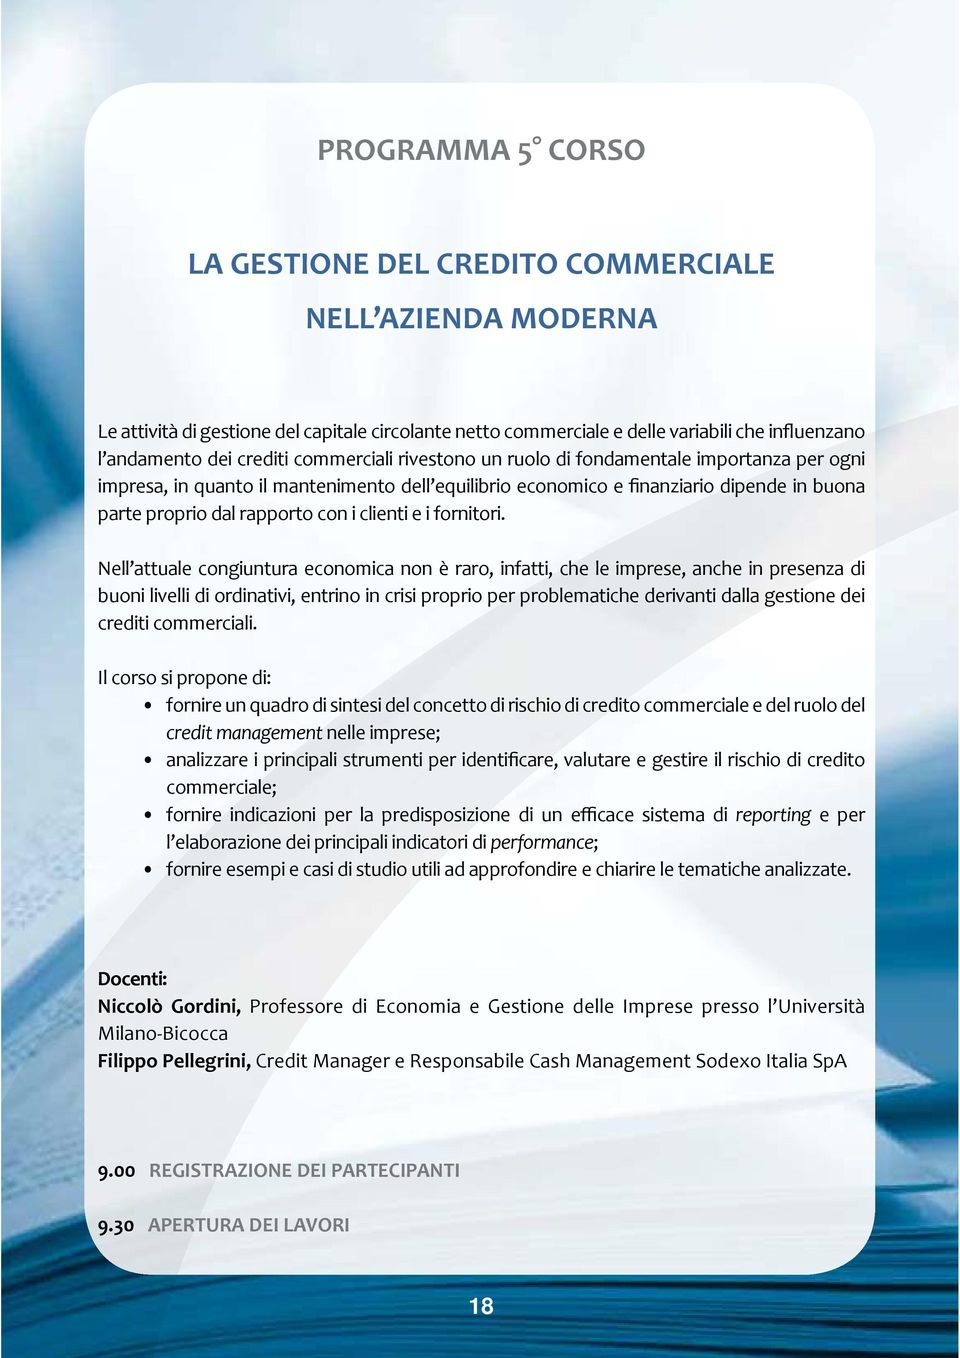 fornire un quadro di sintesi del concetto di rischio di credito commerciale e del ruolo del credit management nelle imprese;